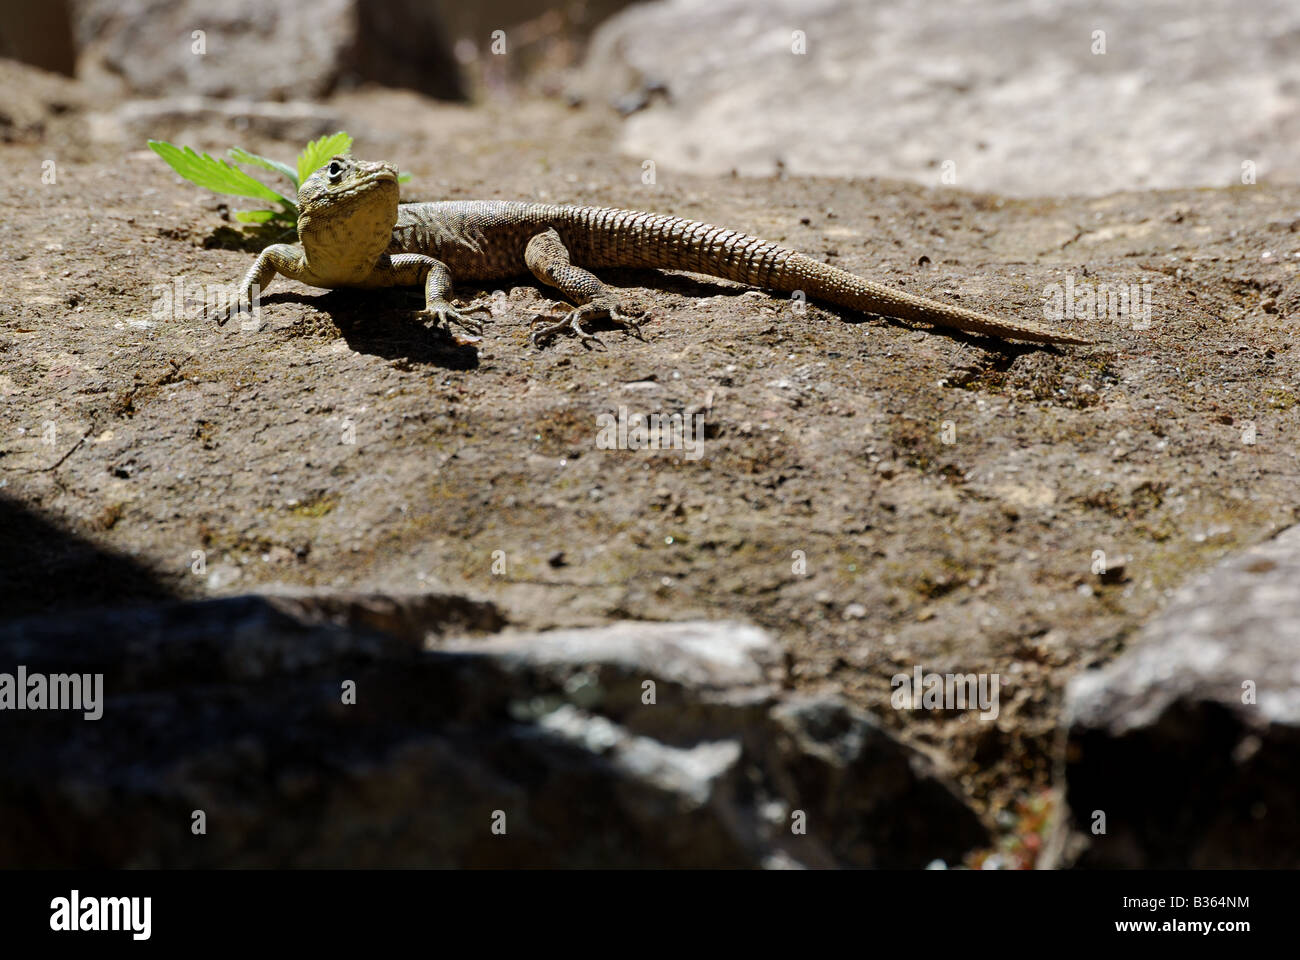 Peru, gekko on ancient ruins in Machu Picchu Stock Photo